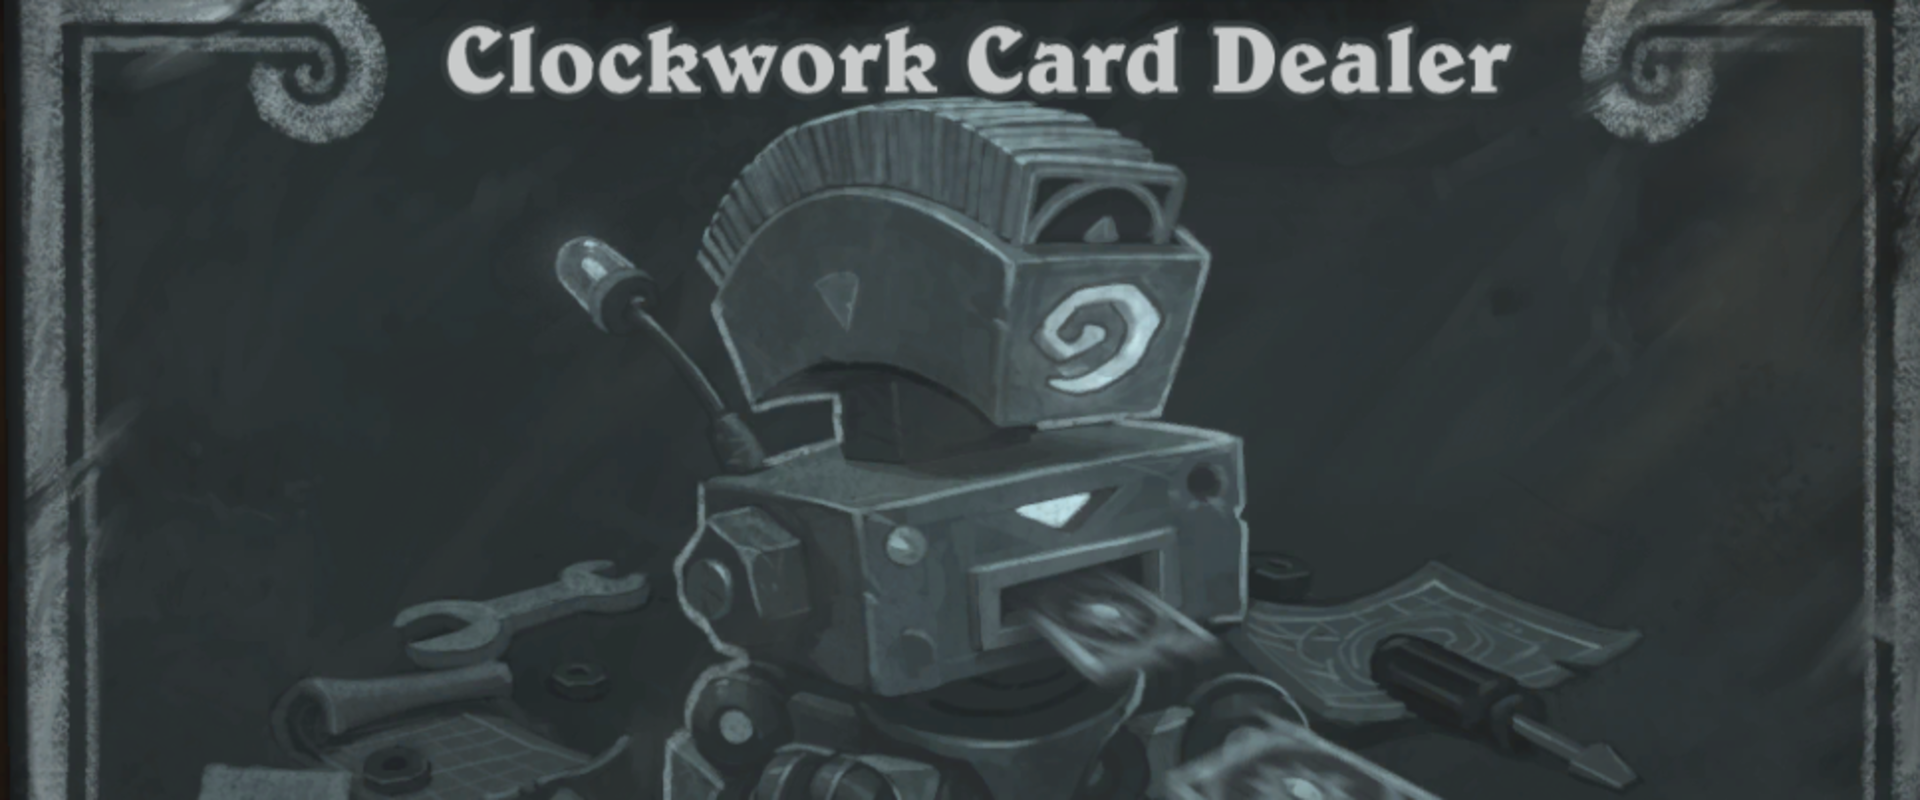 A Clockwork Card Dealer játékmód tér vissza az eheti Tavern Brawlban!